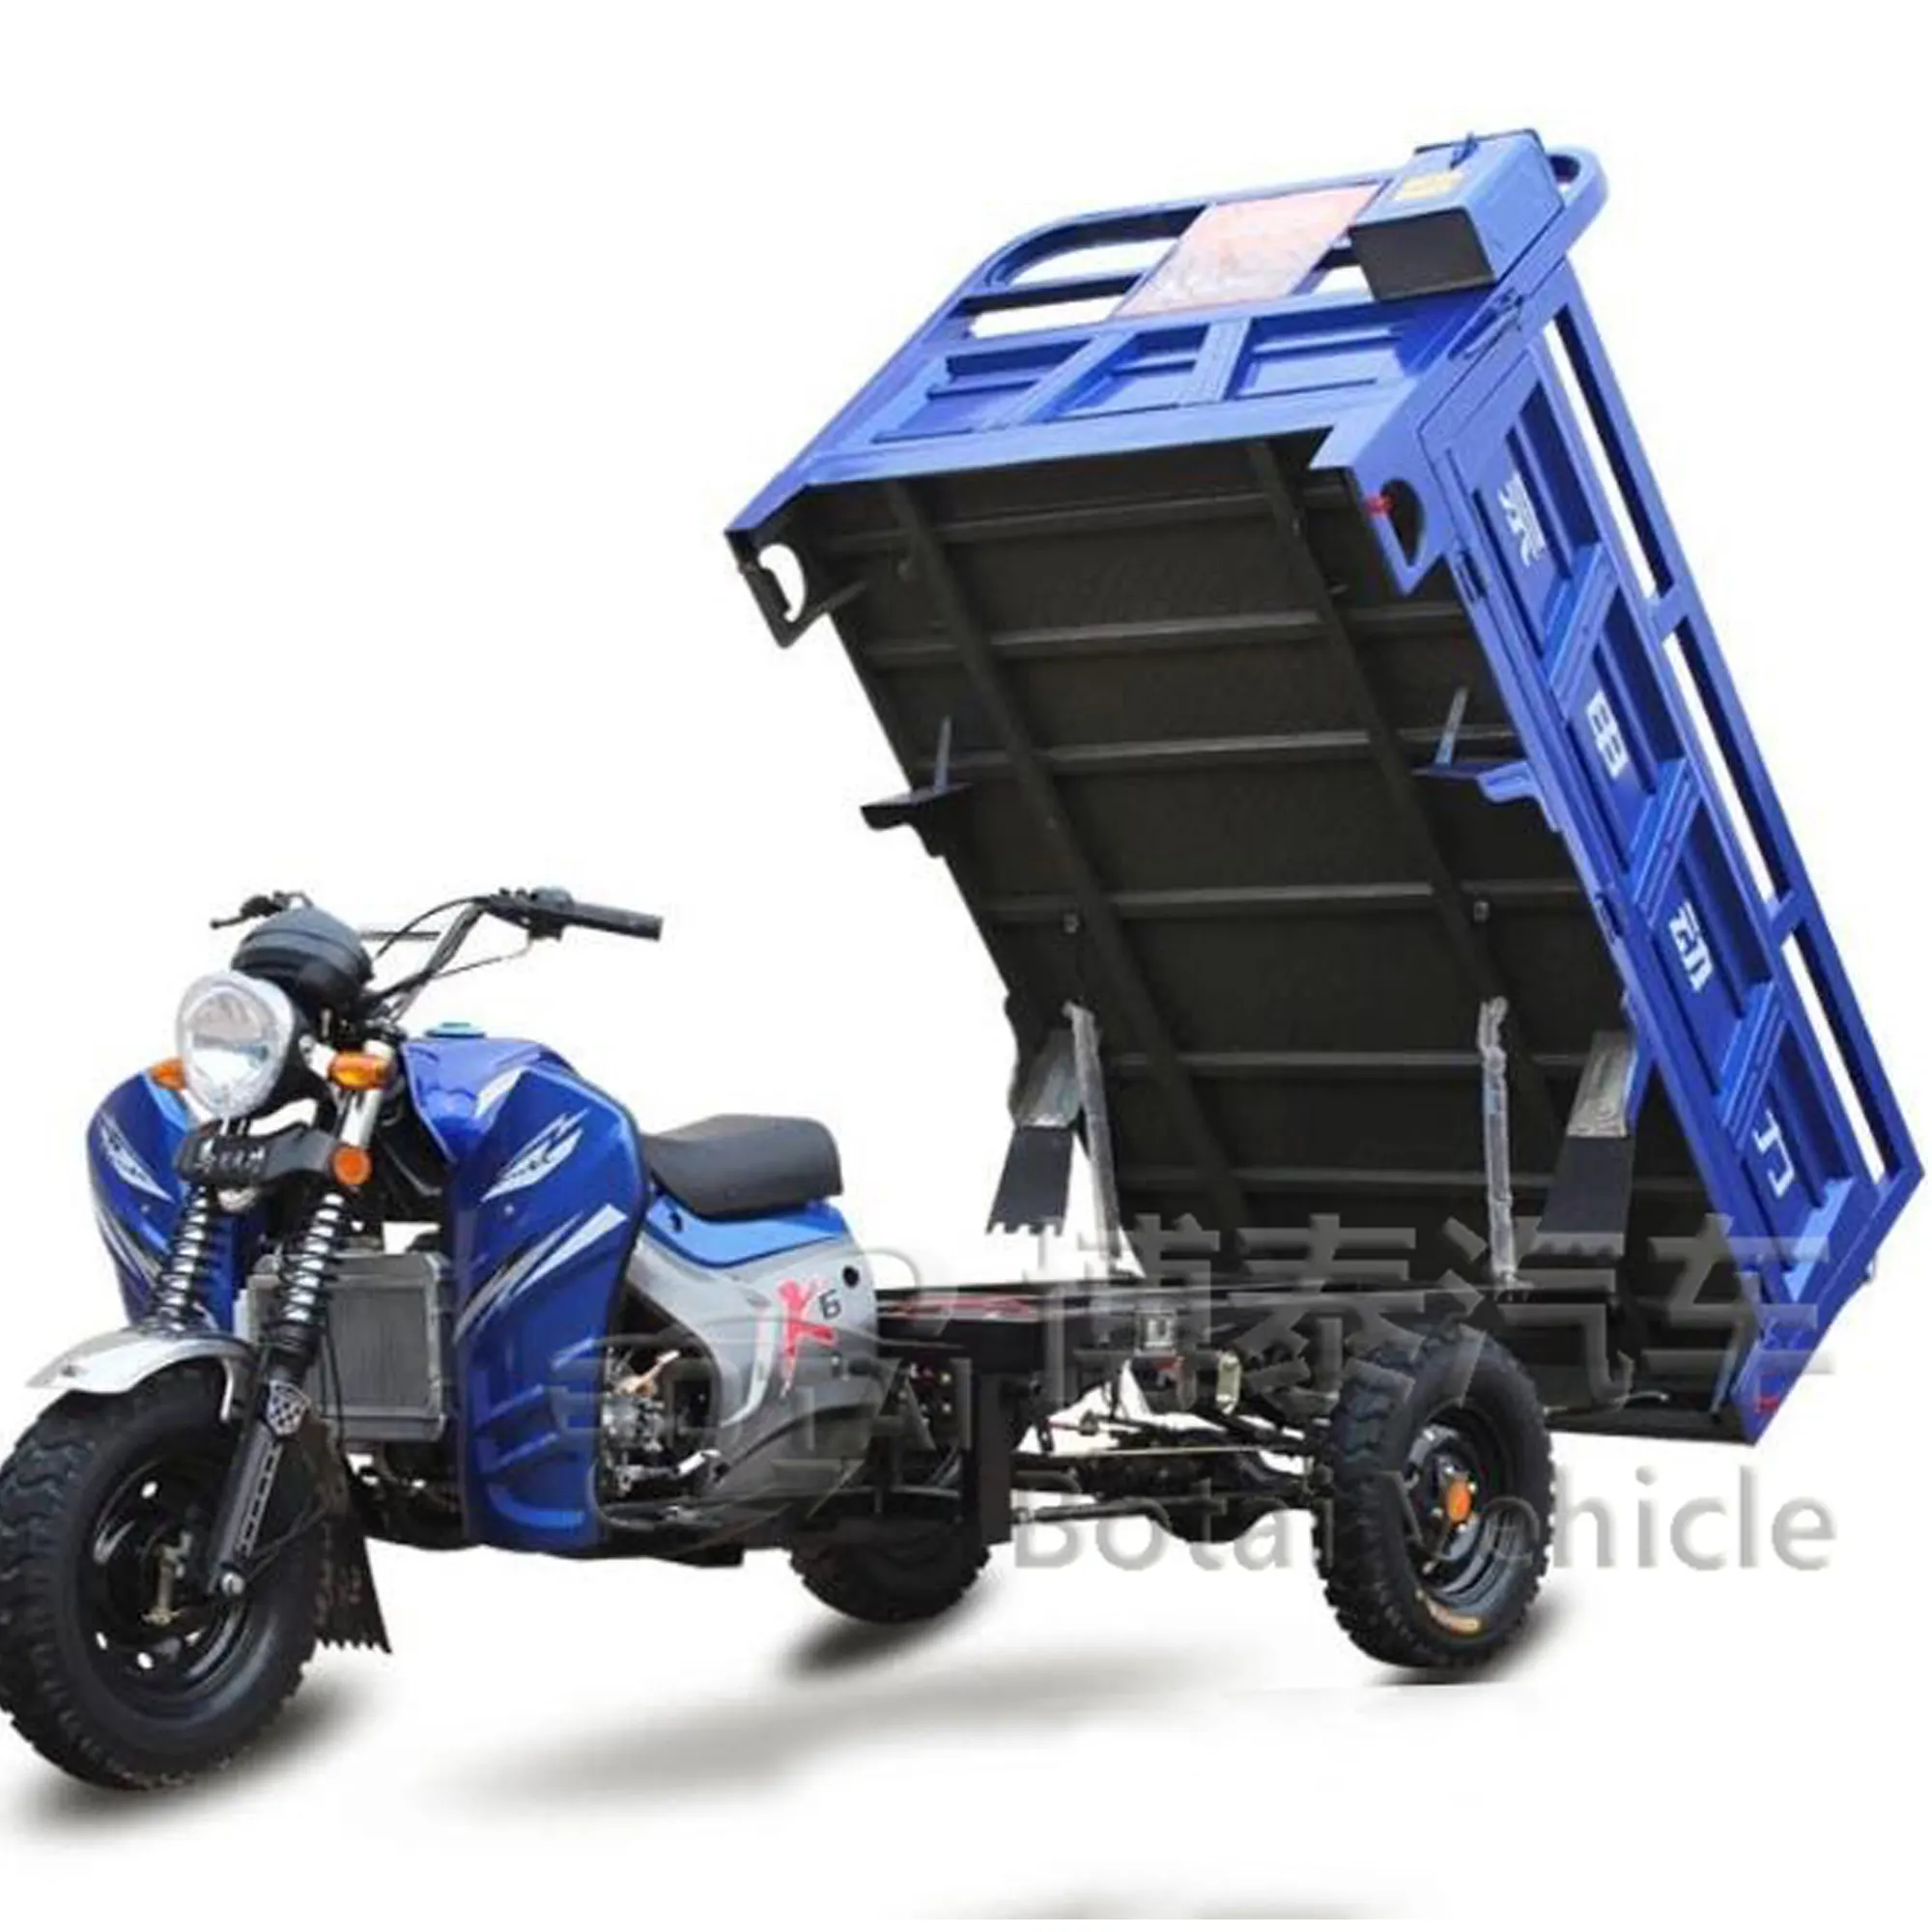 Triciclo all'ingrosso del motociclo fatto in Cina, di alta qualità ed a buon mercato del motociclo del carico triciclo vendite motorizzato tricicli